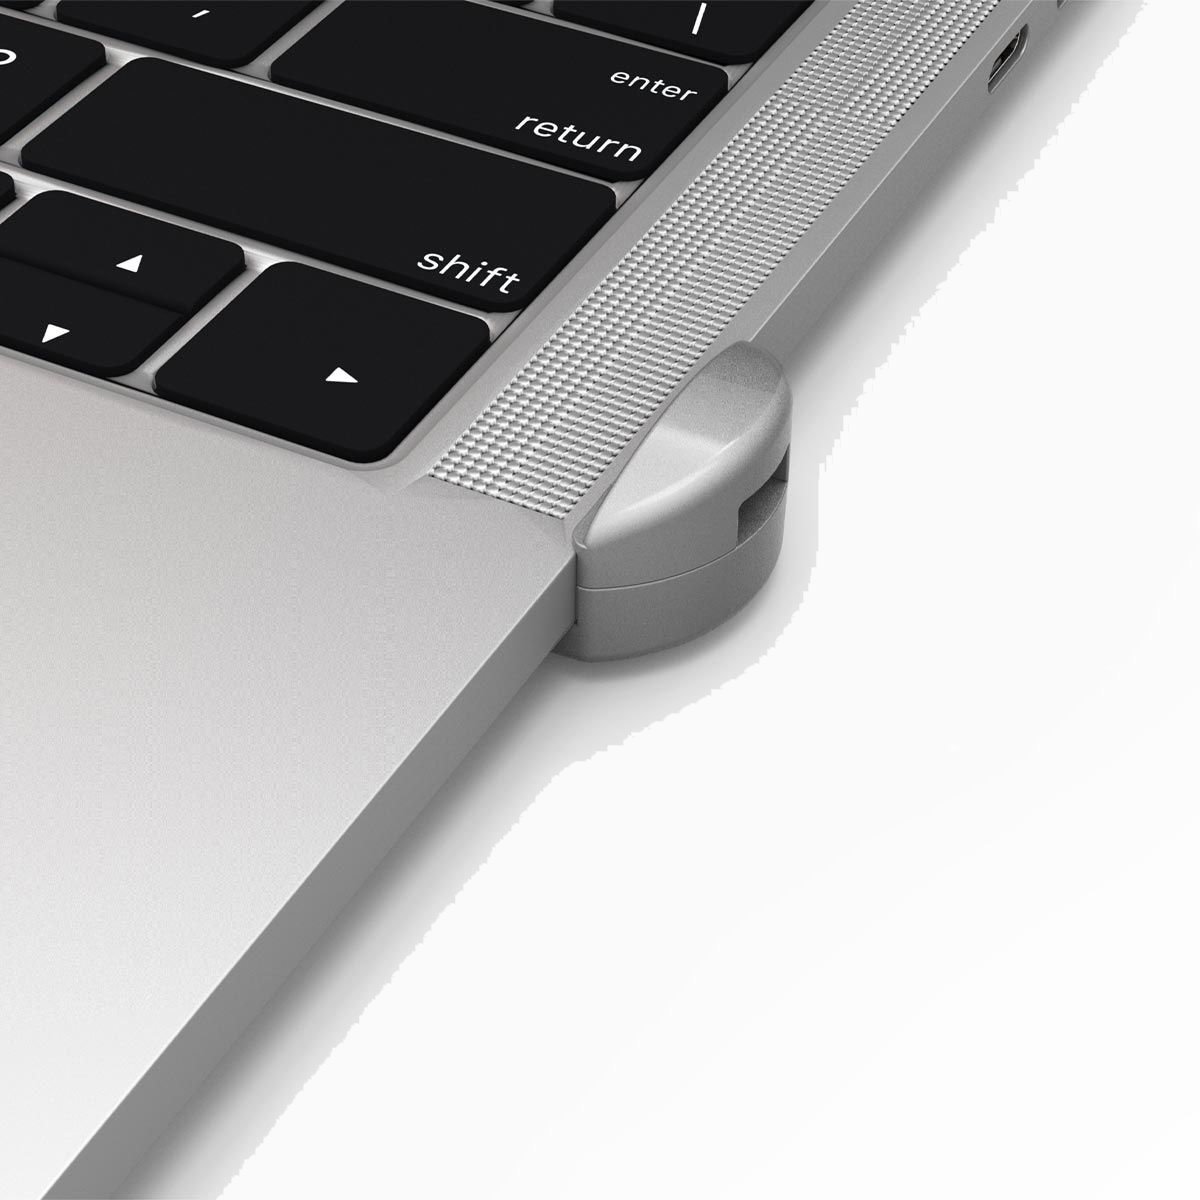 Maclocks MacBook Lock Adapter